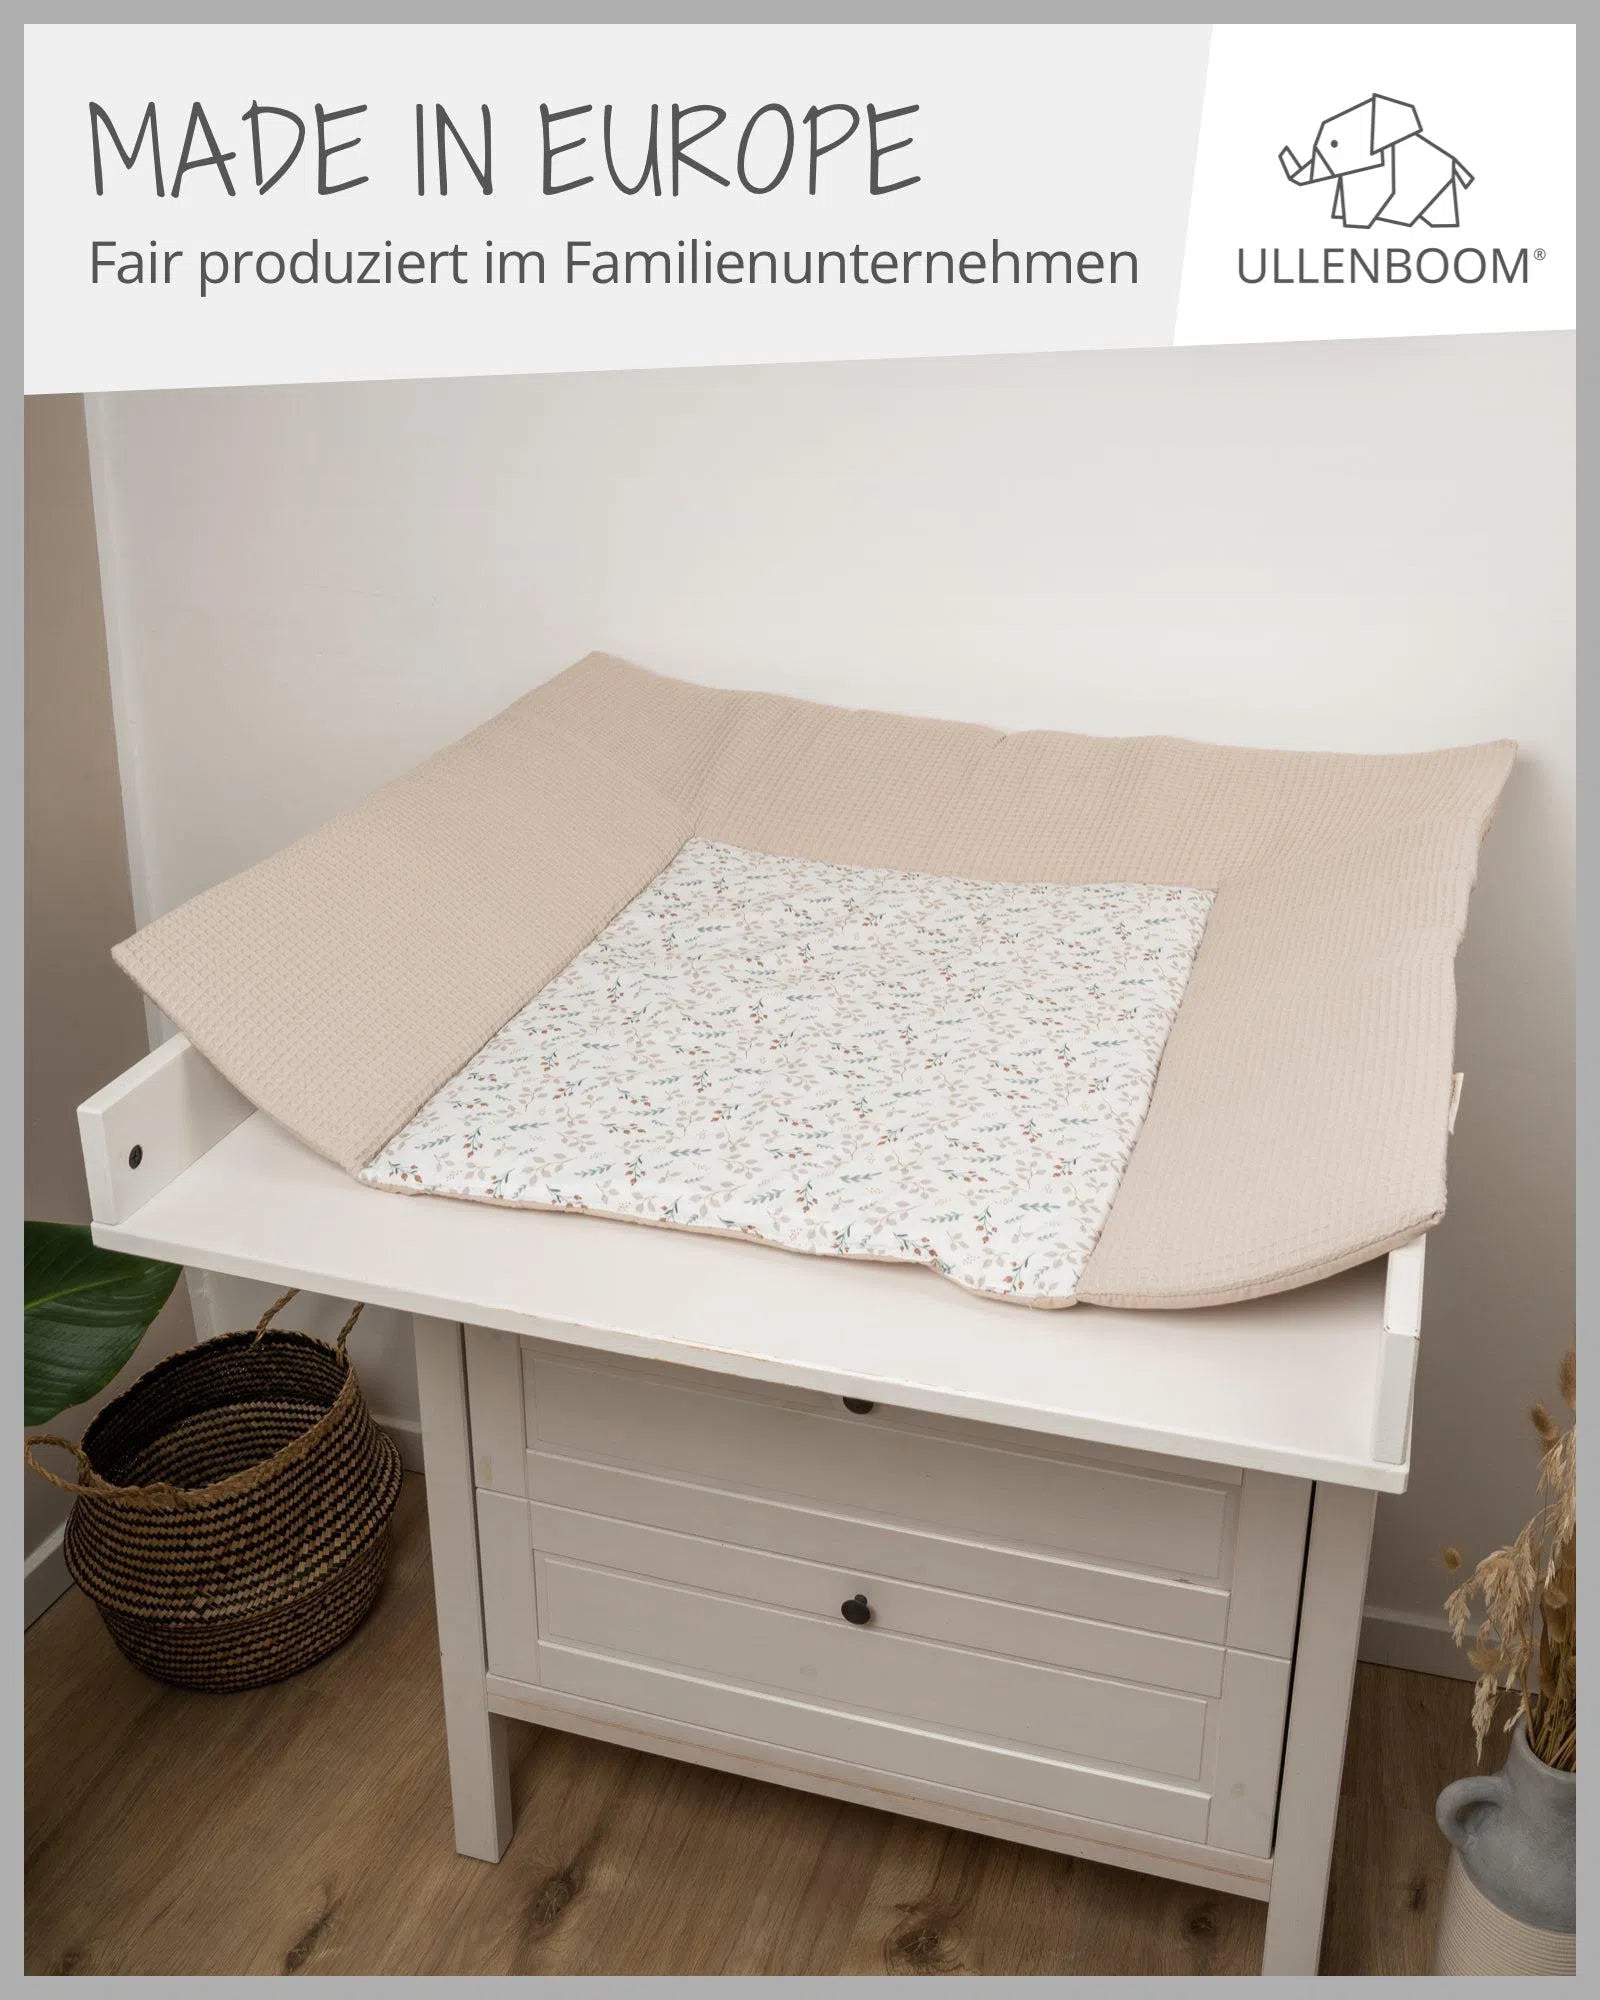 Wickelauflage Waffelpiqué Motiv FLORAL SAND-ULLENBOOM-75 x 85 cm-ULLENBOOM Baby